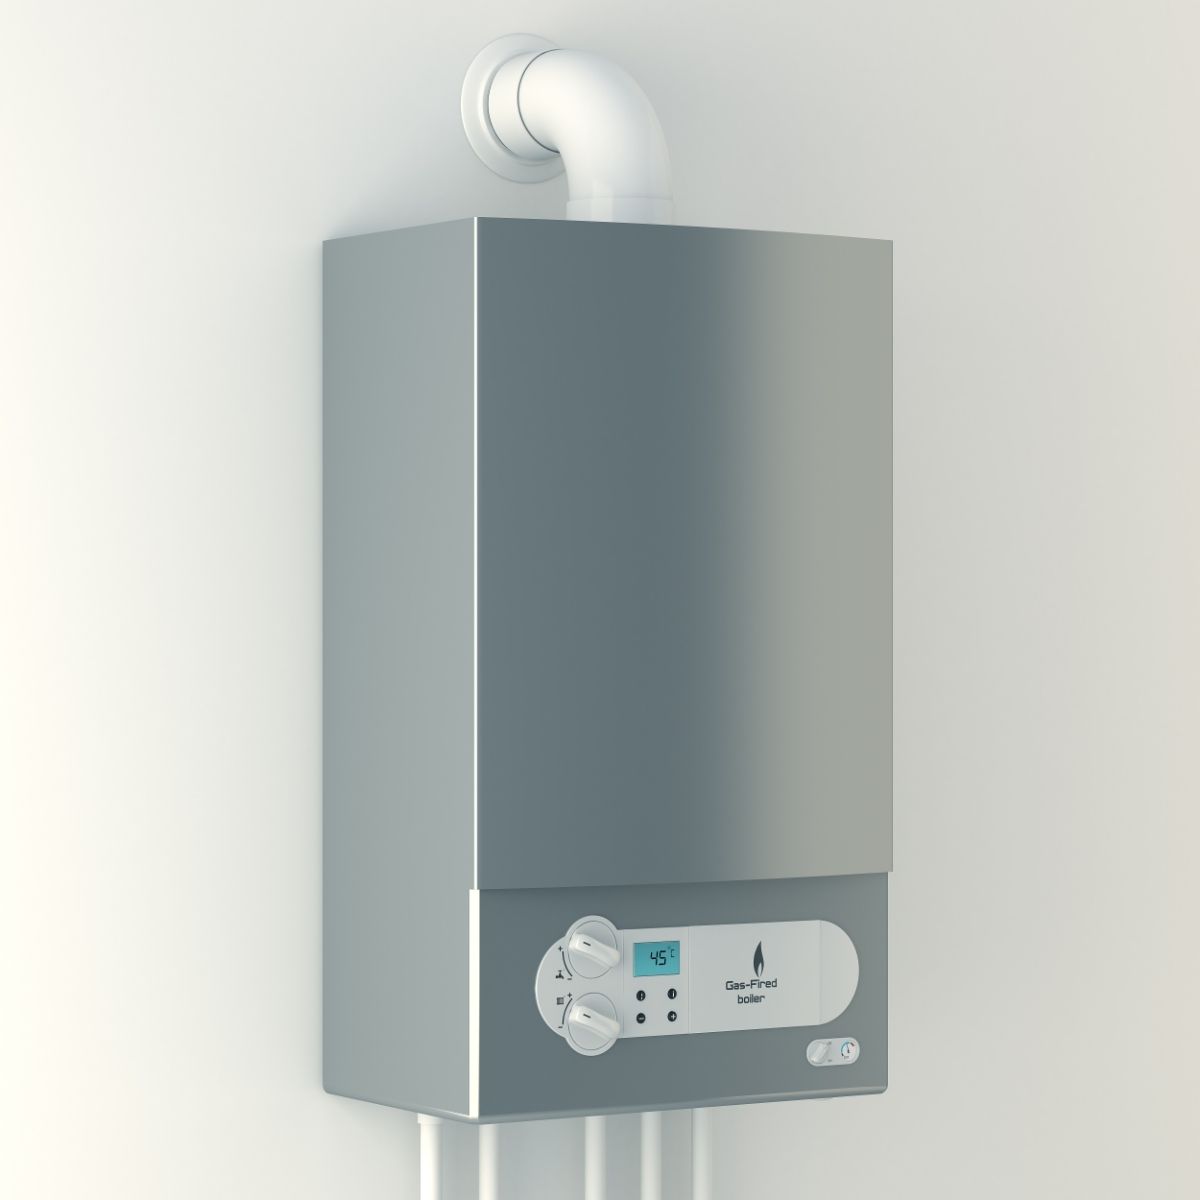 Types of boiler